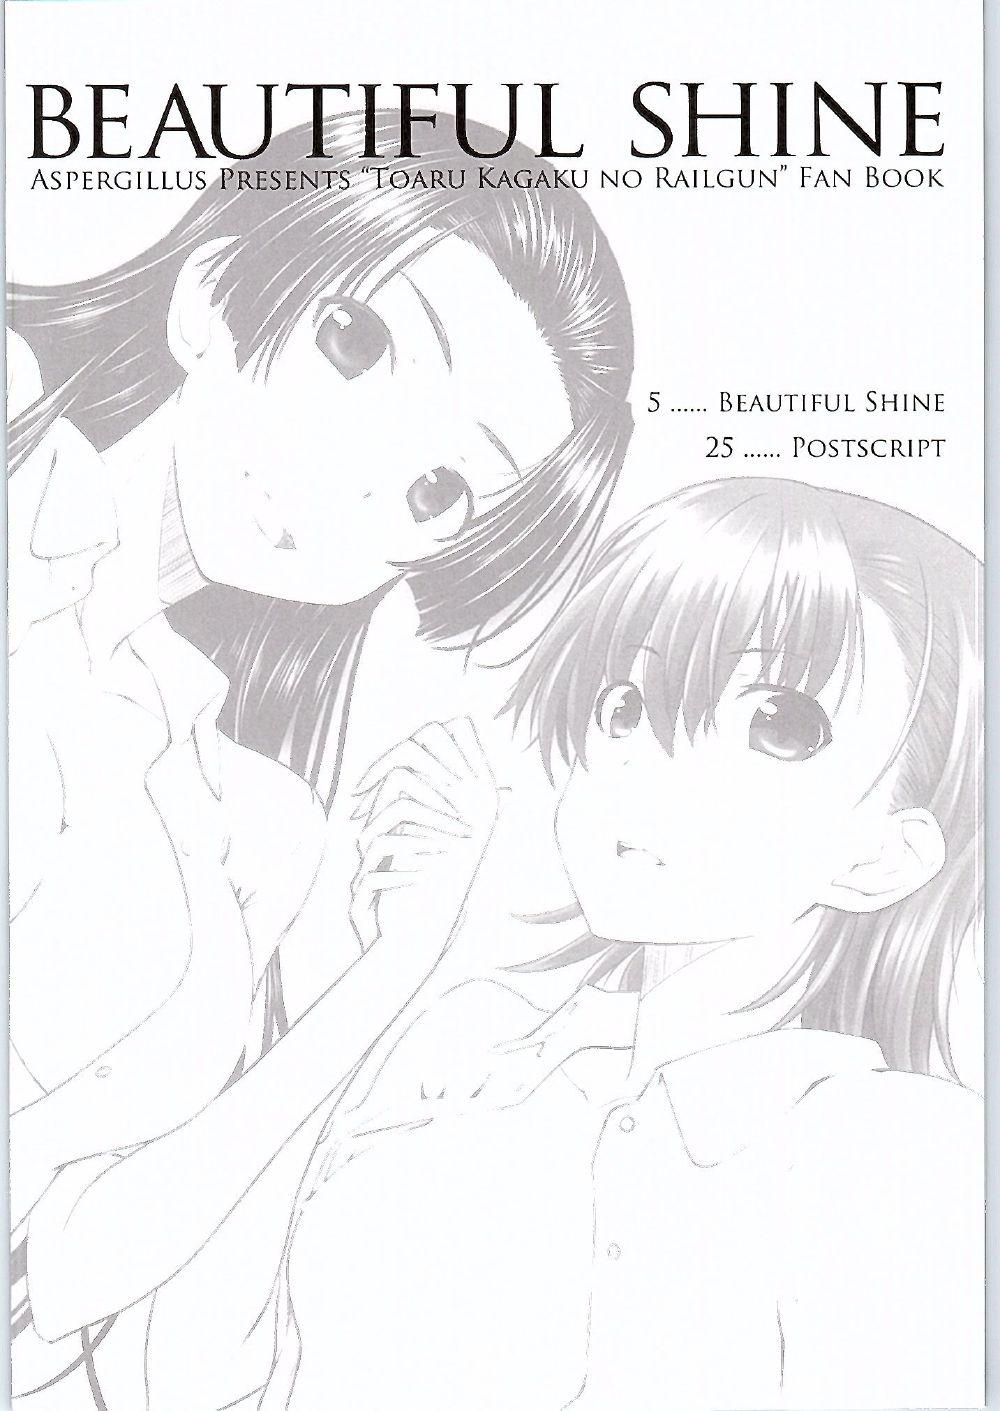 Chica BEAUTIFUL SHINE - Toaru kagaku no railgun Camgirls - Page 3